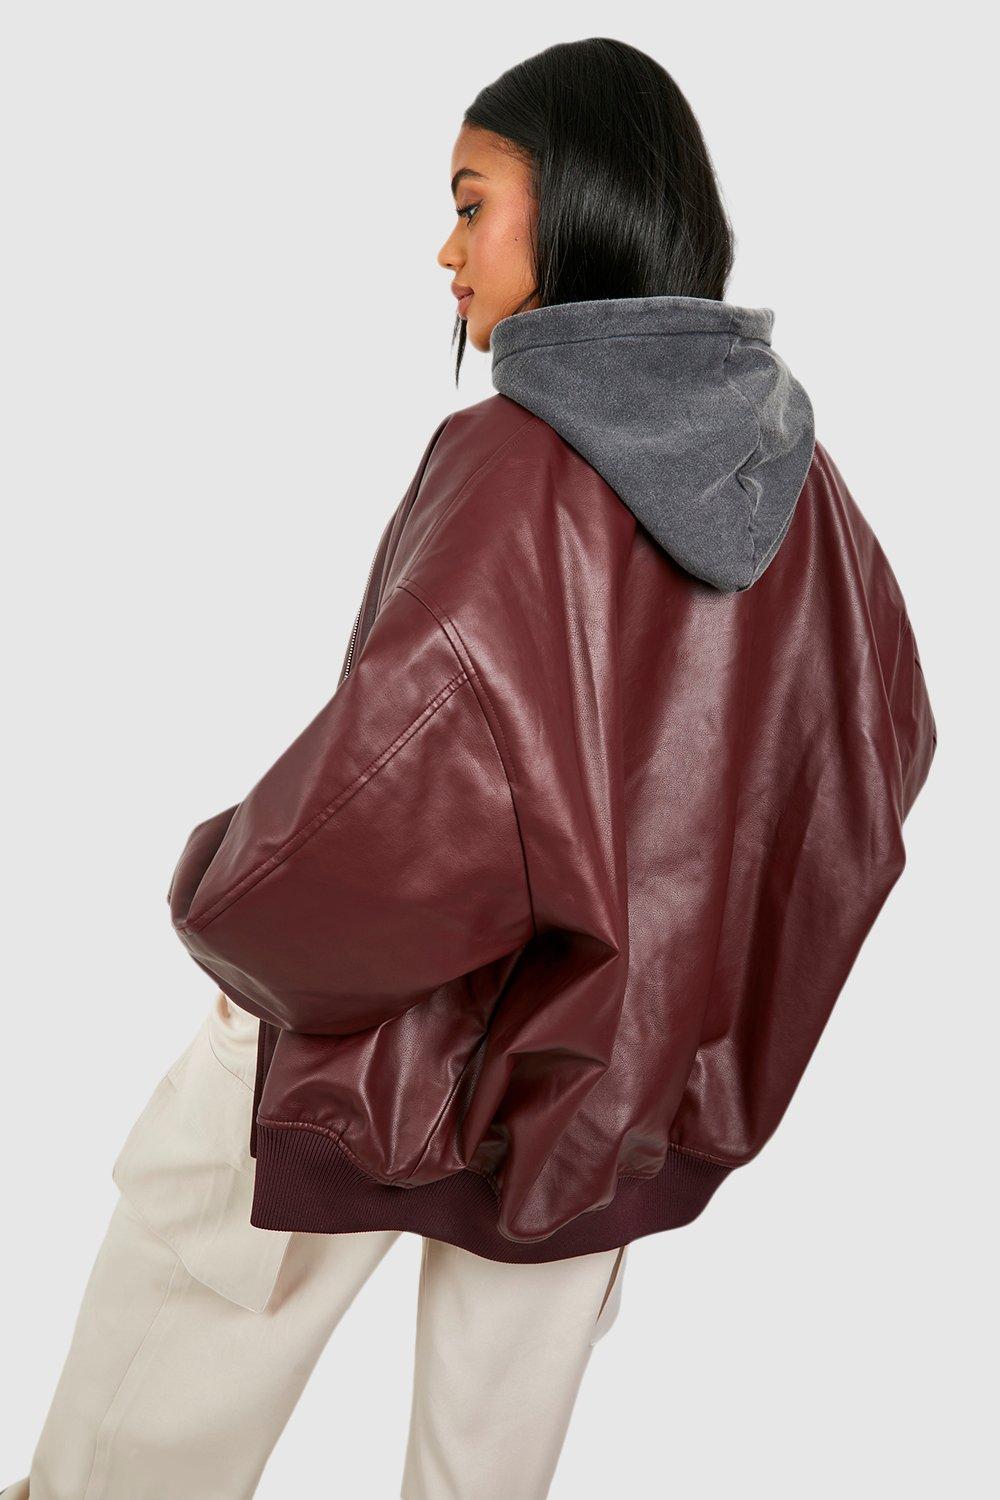 Oversized Faux Leather Bomber Jacket